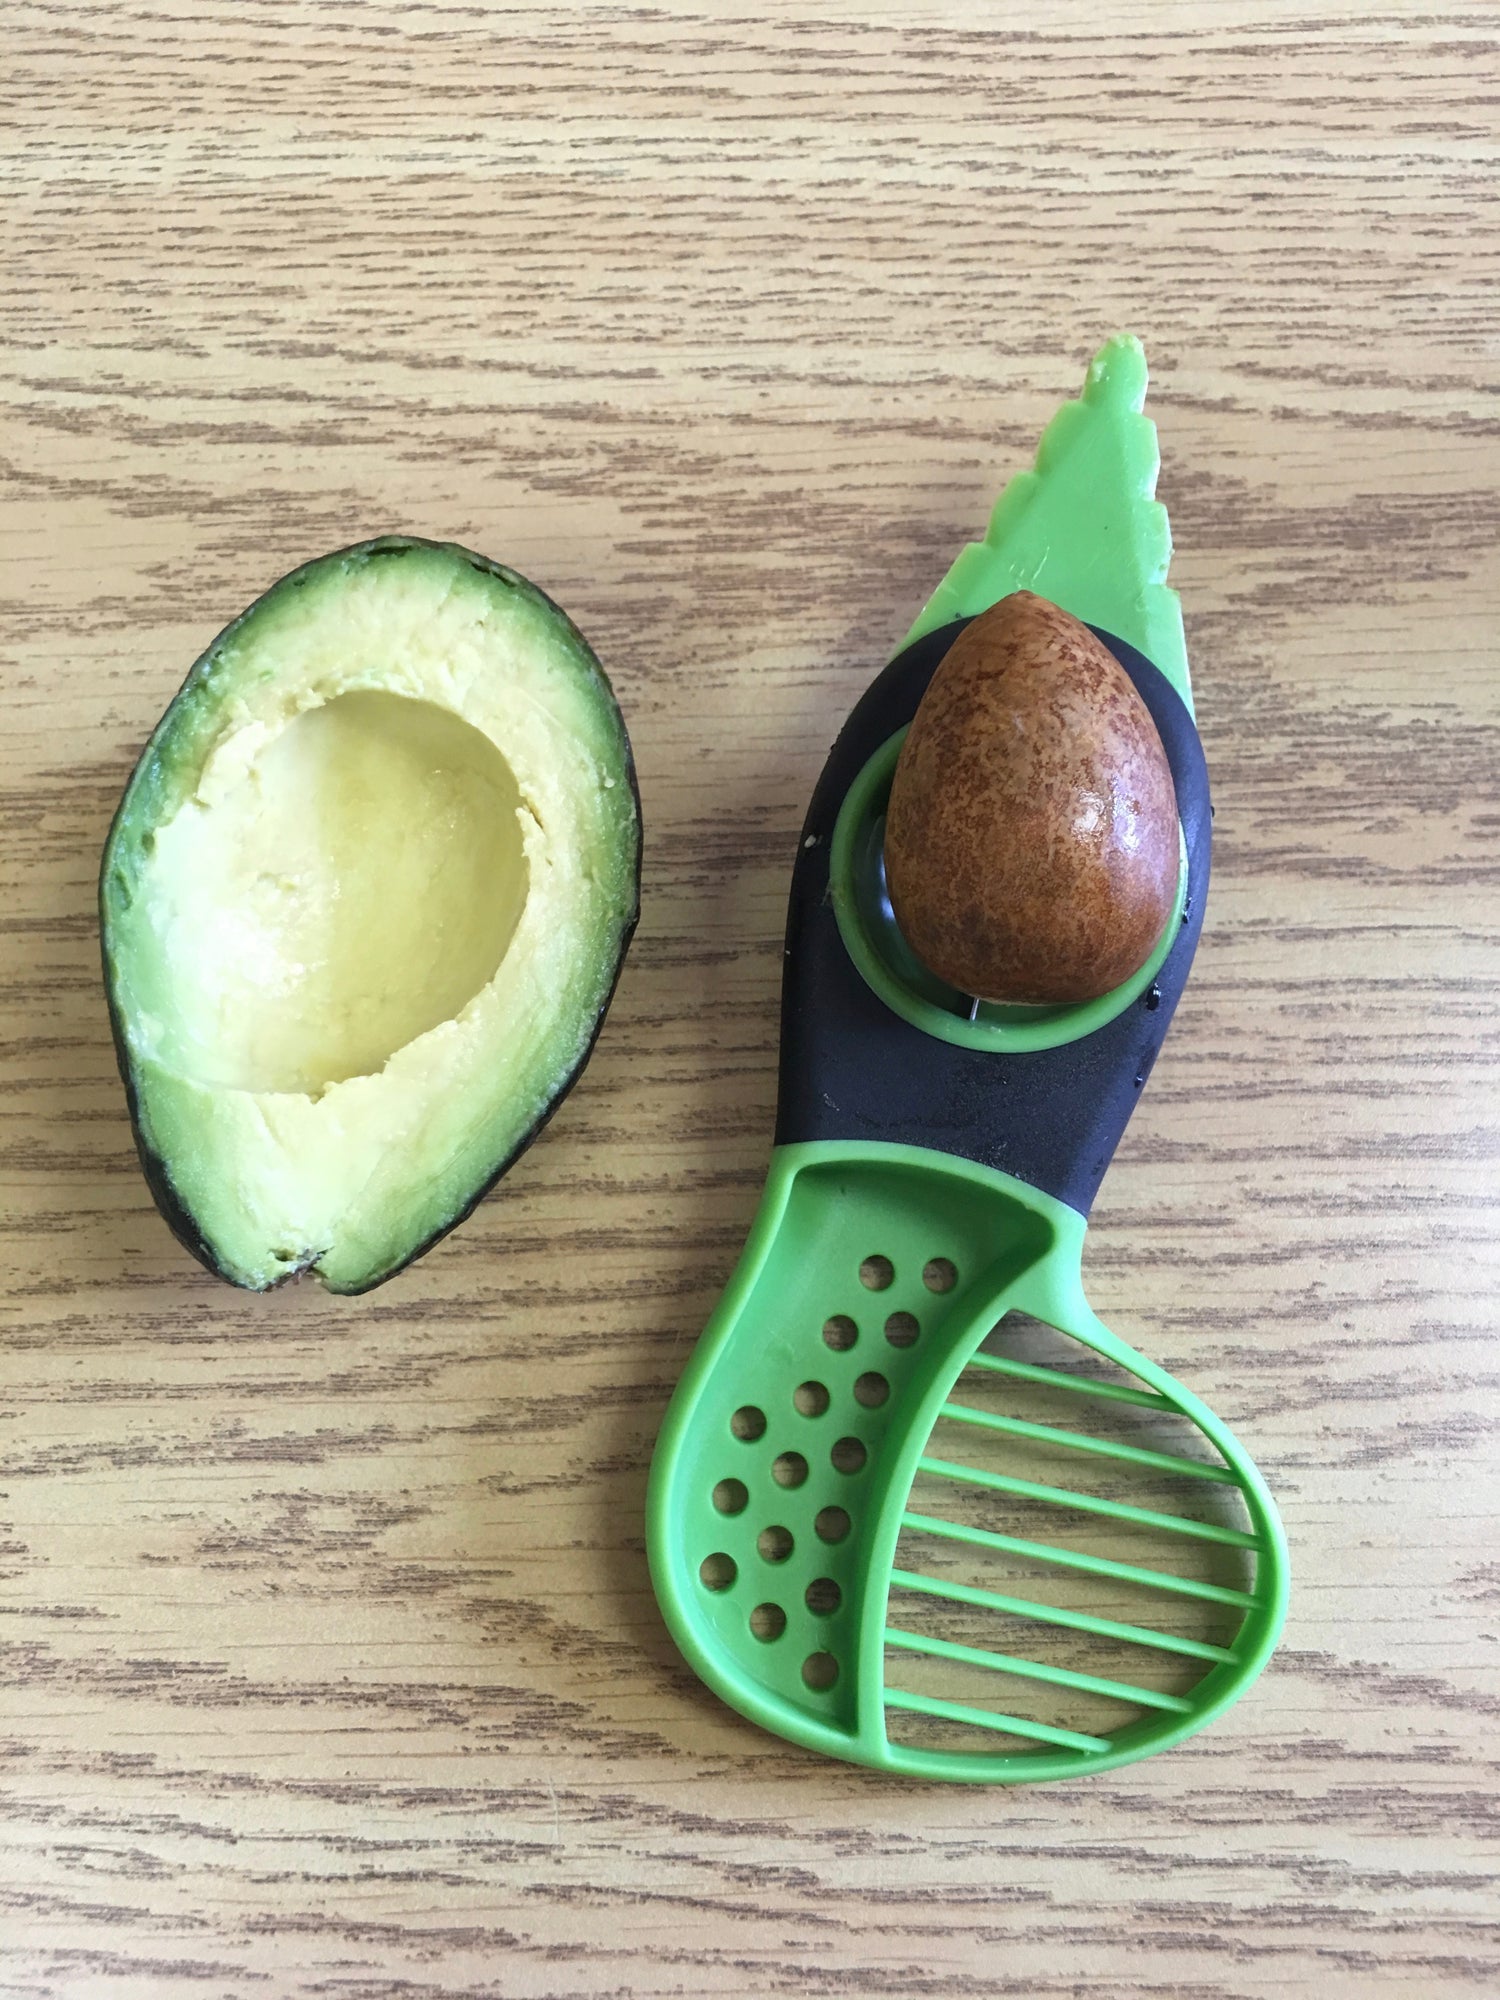 Avocado Slicer 3 in 1 Avocado Peeler Avocado Knife Multifunctional